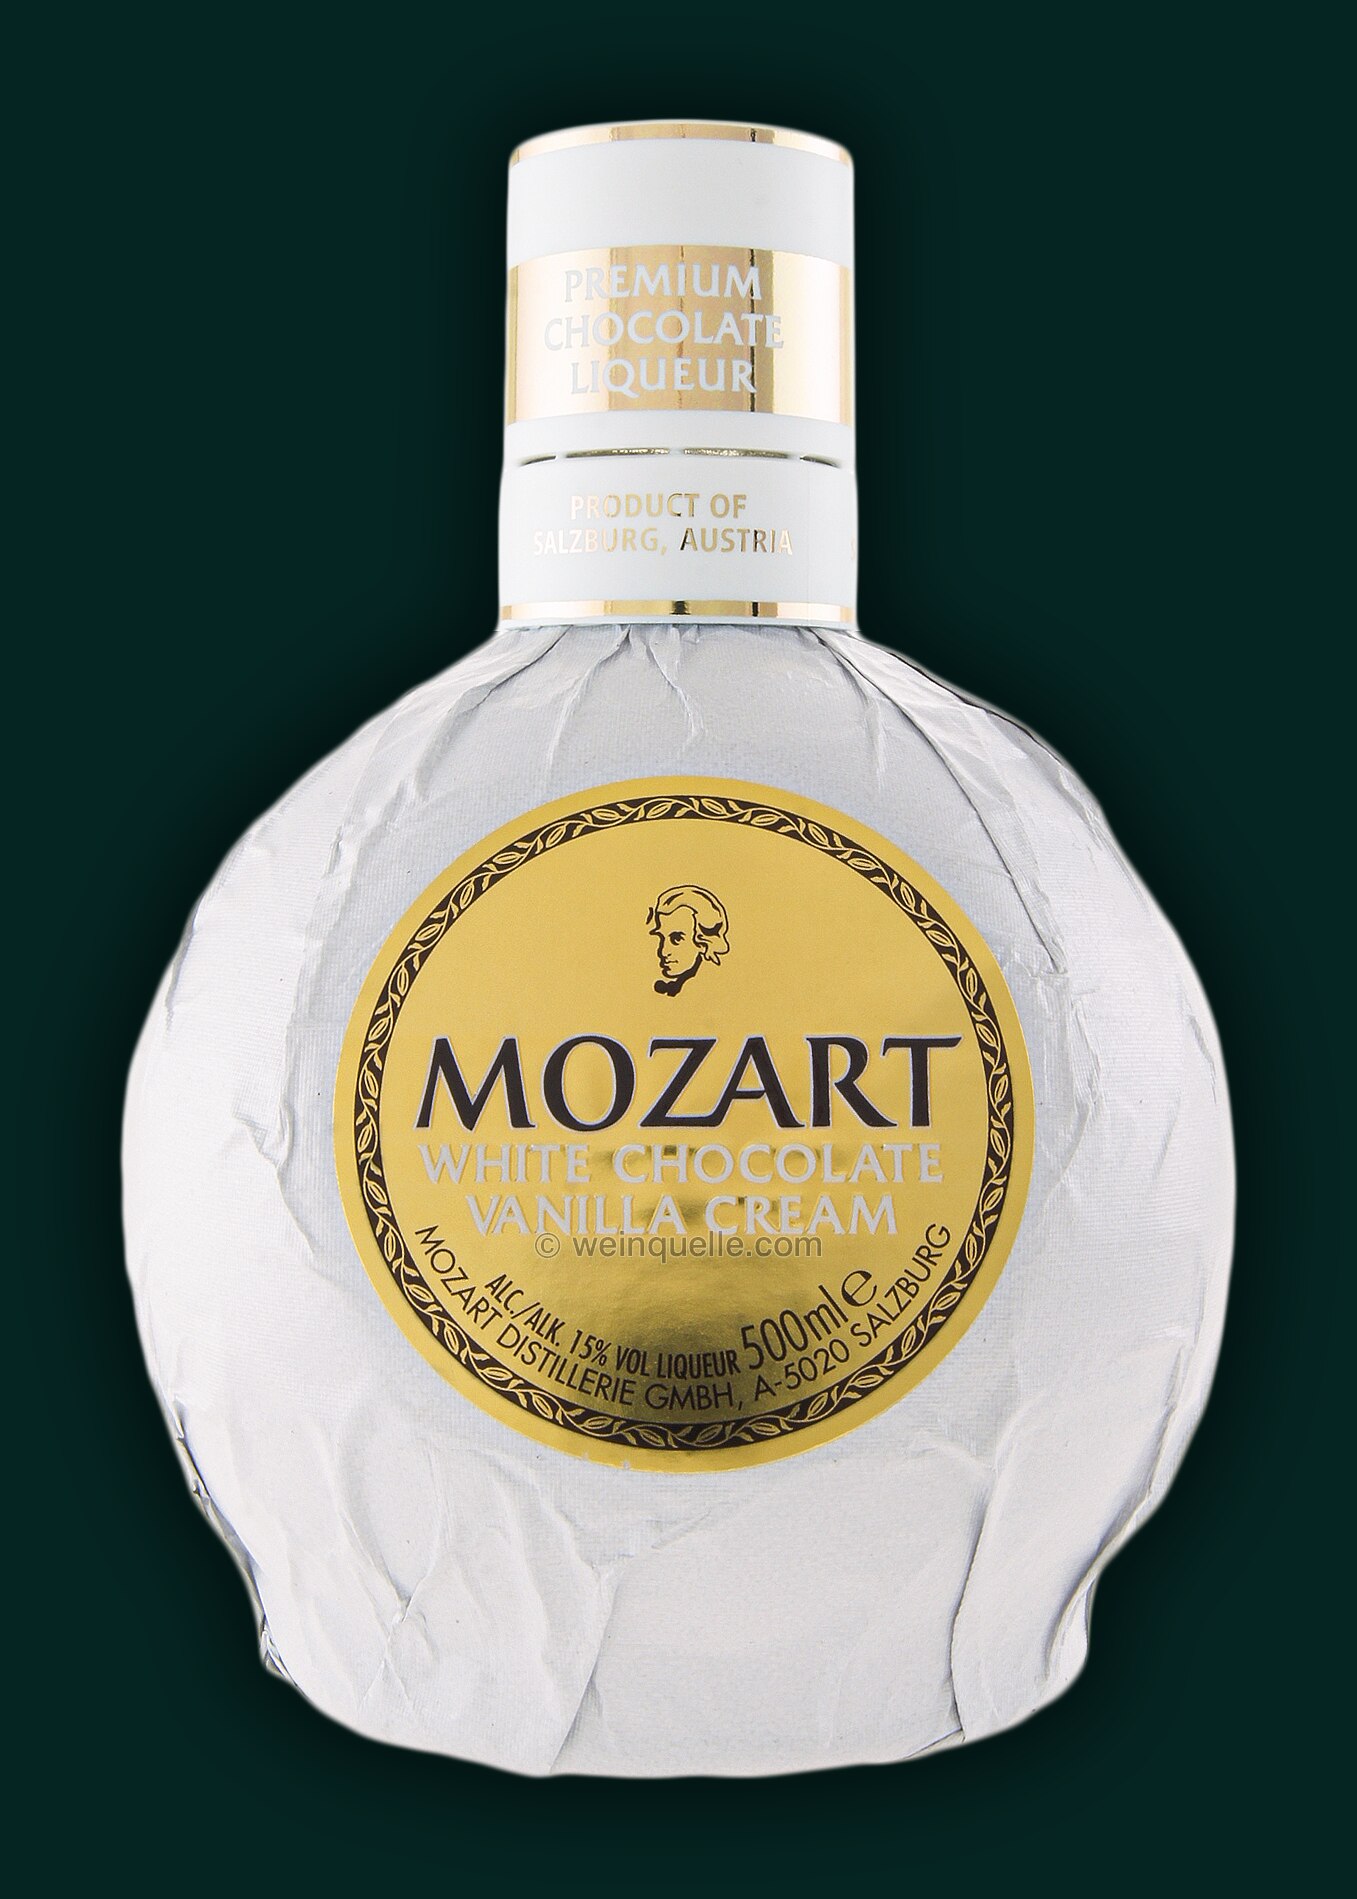 Mozart White Chocolate 0,5 Cream Vanilla - Weinquelle Lühmann Liter